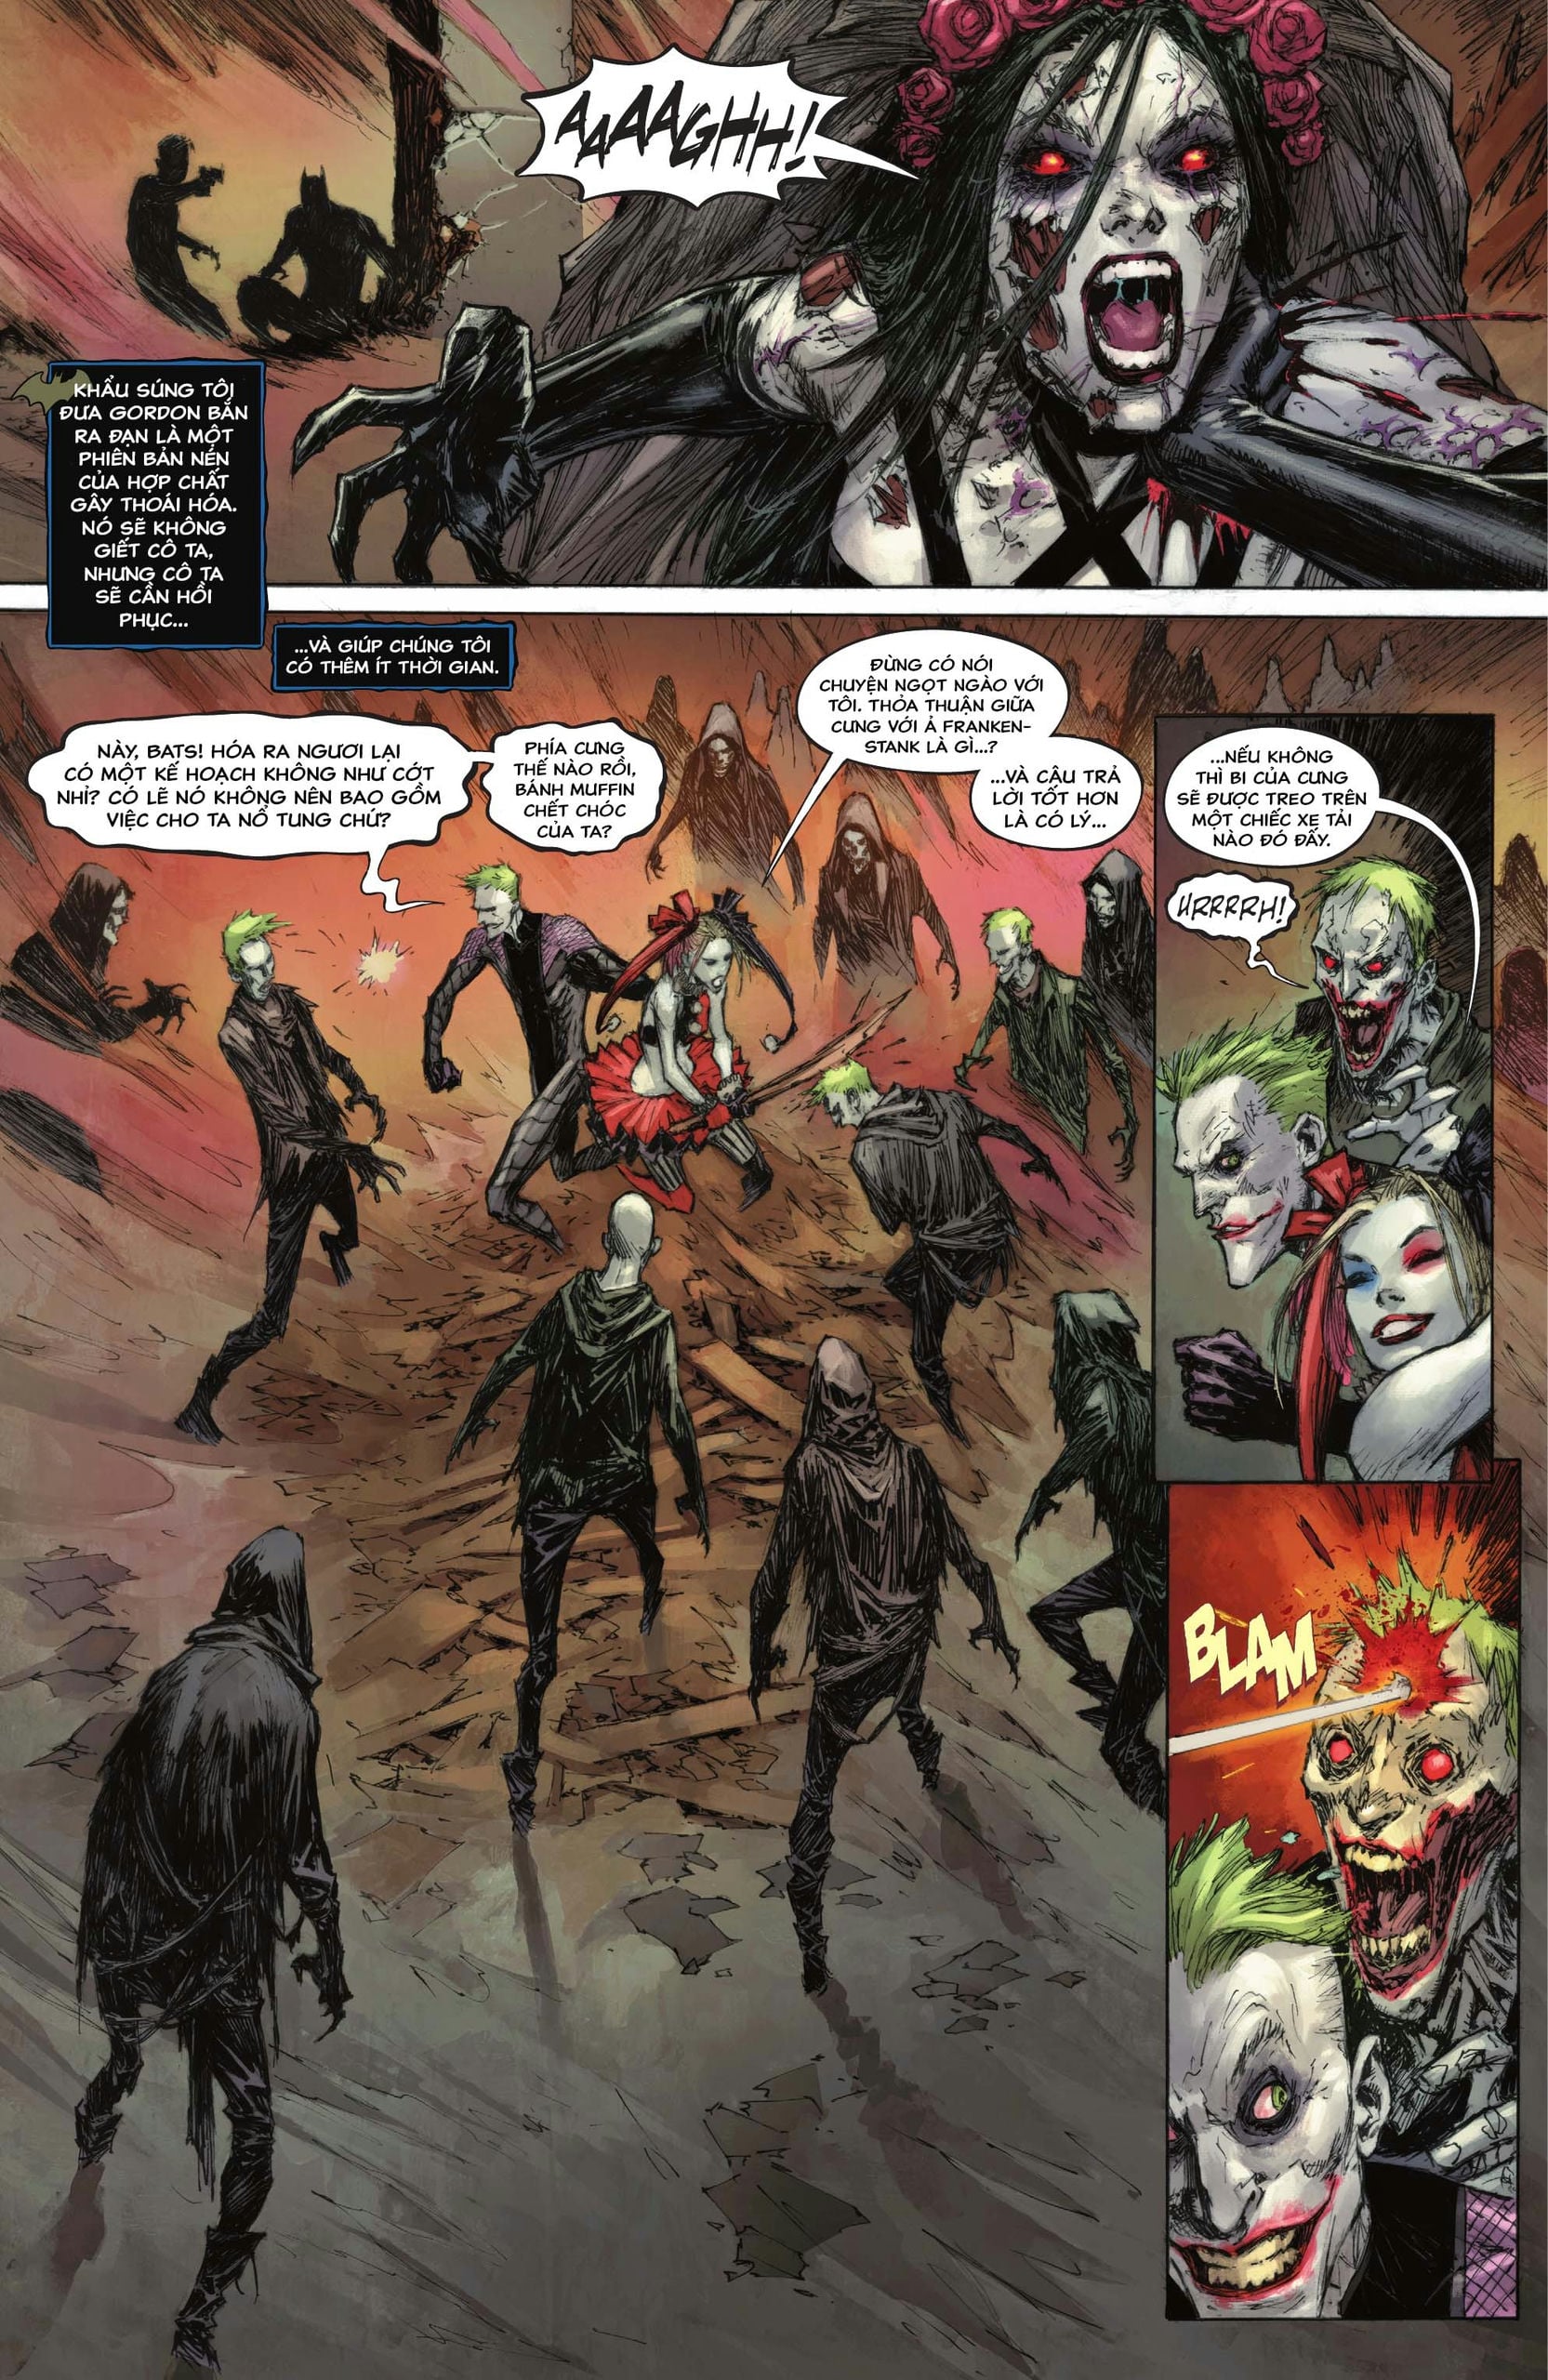 https://langgeek.net/wp-content/webpc-passthru.php?src=https://langgeek.net/wp-content/uploads/2023/05/Batman-_-The-Joker-The-Deadly-Duo-2022-006-016.jpg&nocache=1